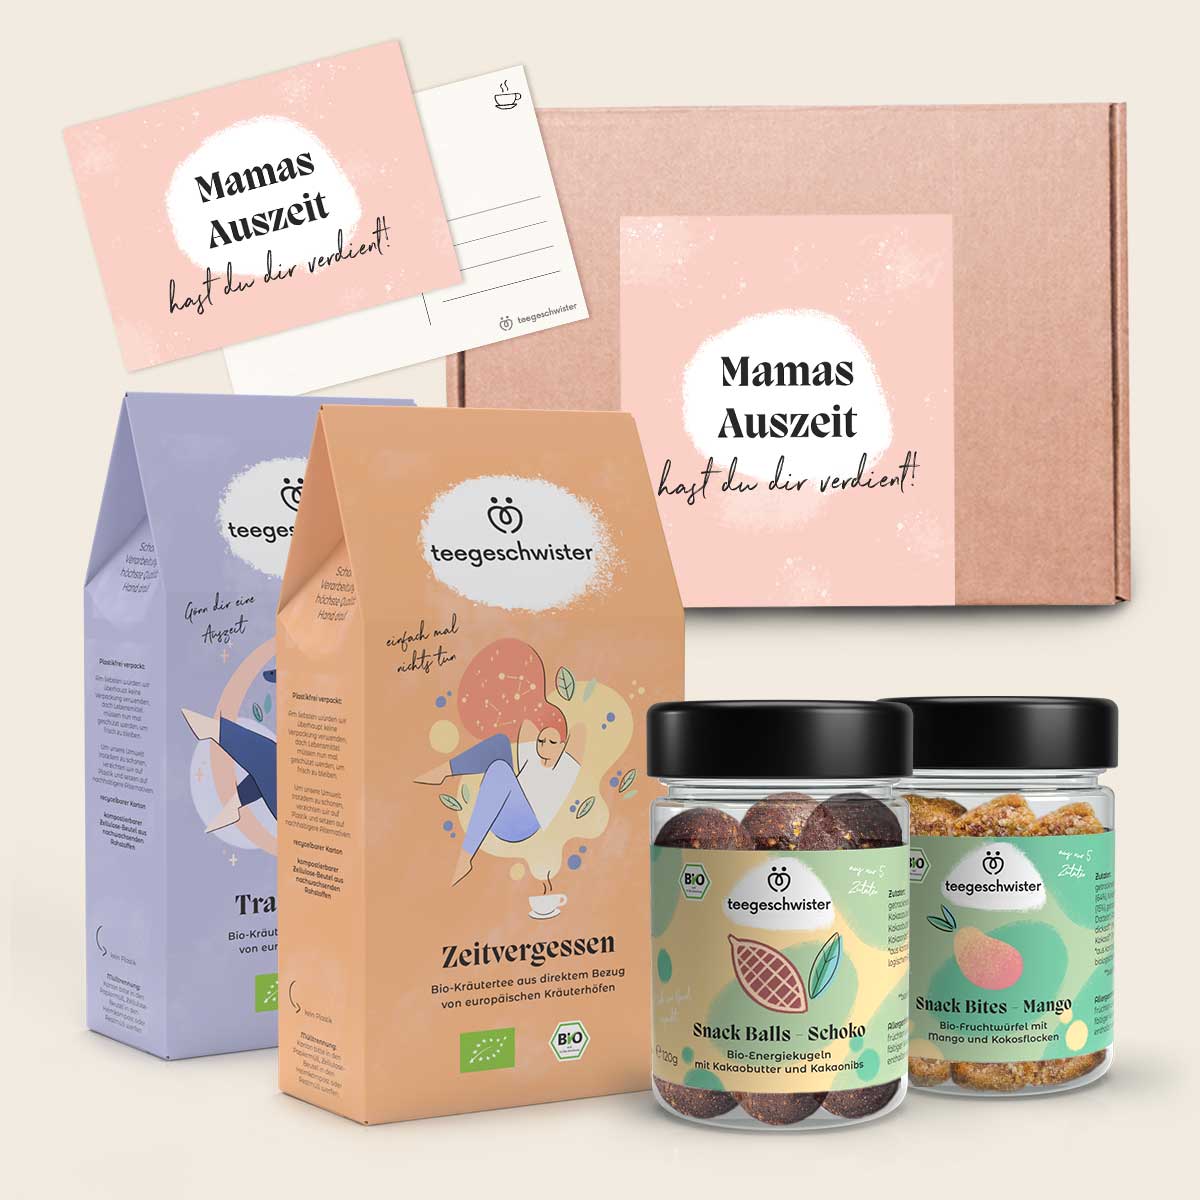 Auf diesem Bild wird die Geschenbox für Mama mit zwei Tees, zwei Snacks und einer Geschenkkarte abgebildet.